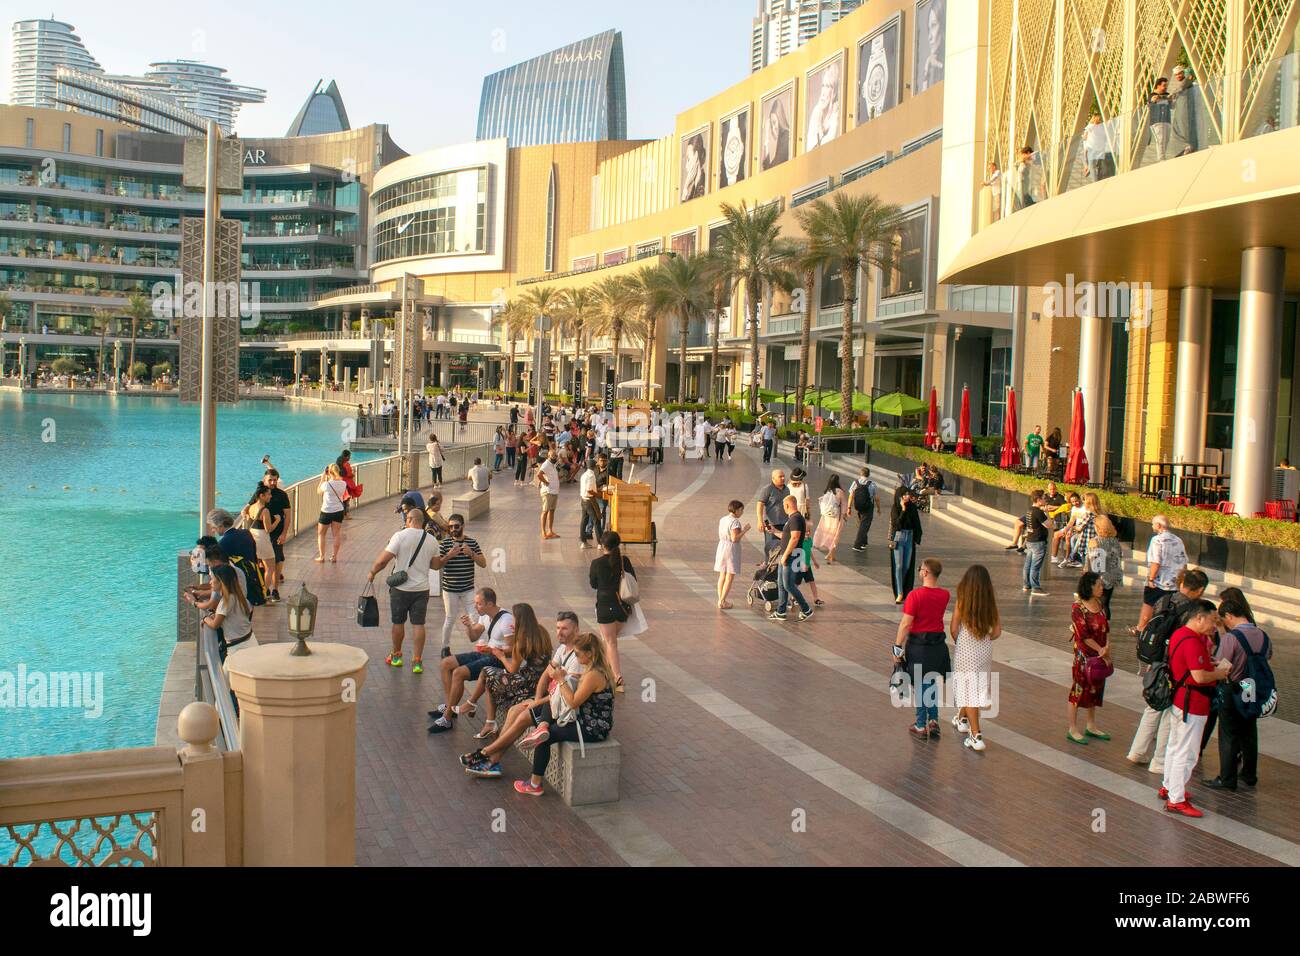 Dubaï / Emirats Arabes Unis - 5 novembre, 2019 : le plus grand centre commercial du monde. Centre commercial de Dubaï extérieur avec les touristes. Banque D'Images